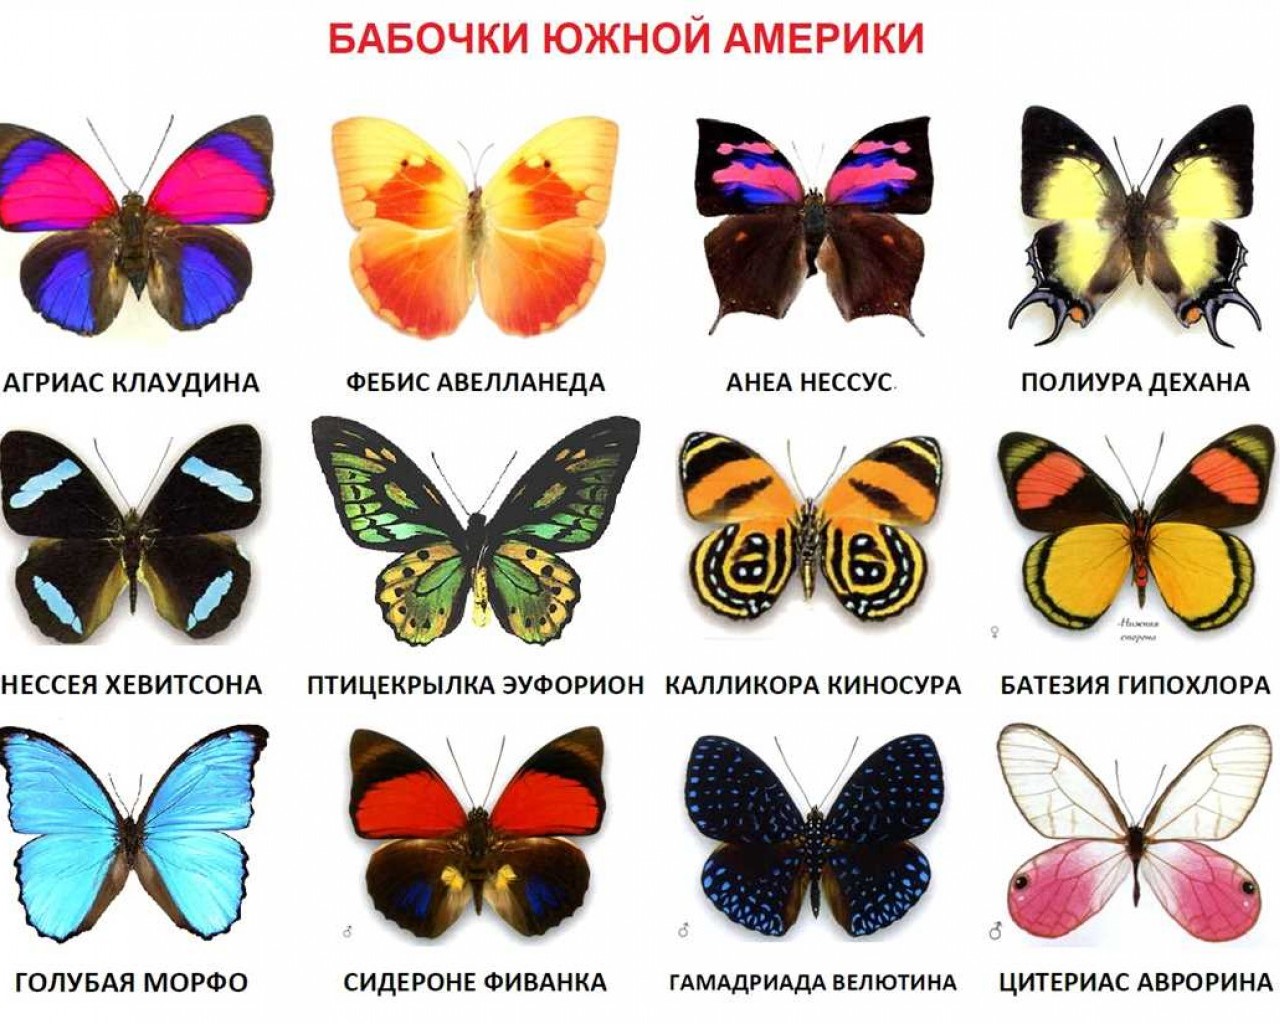 Сколько живут бабочки? Долгожители или краткоживущие создания природы?